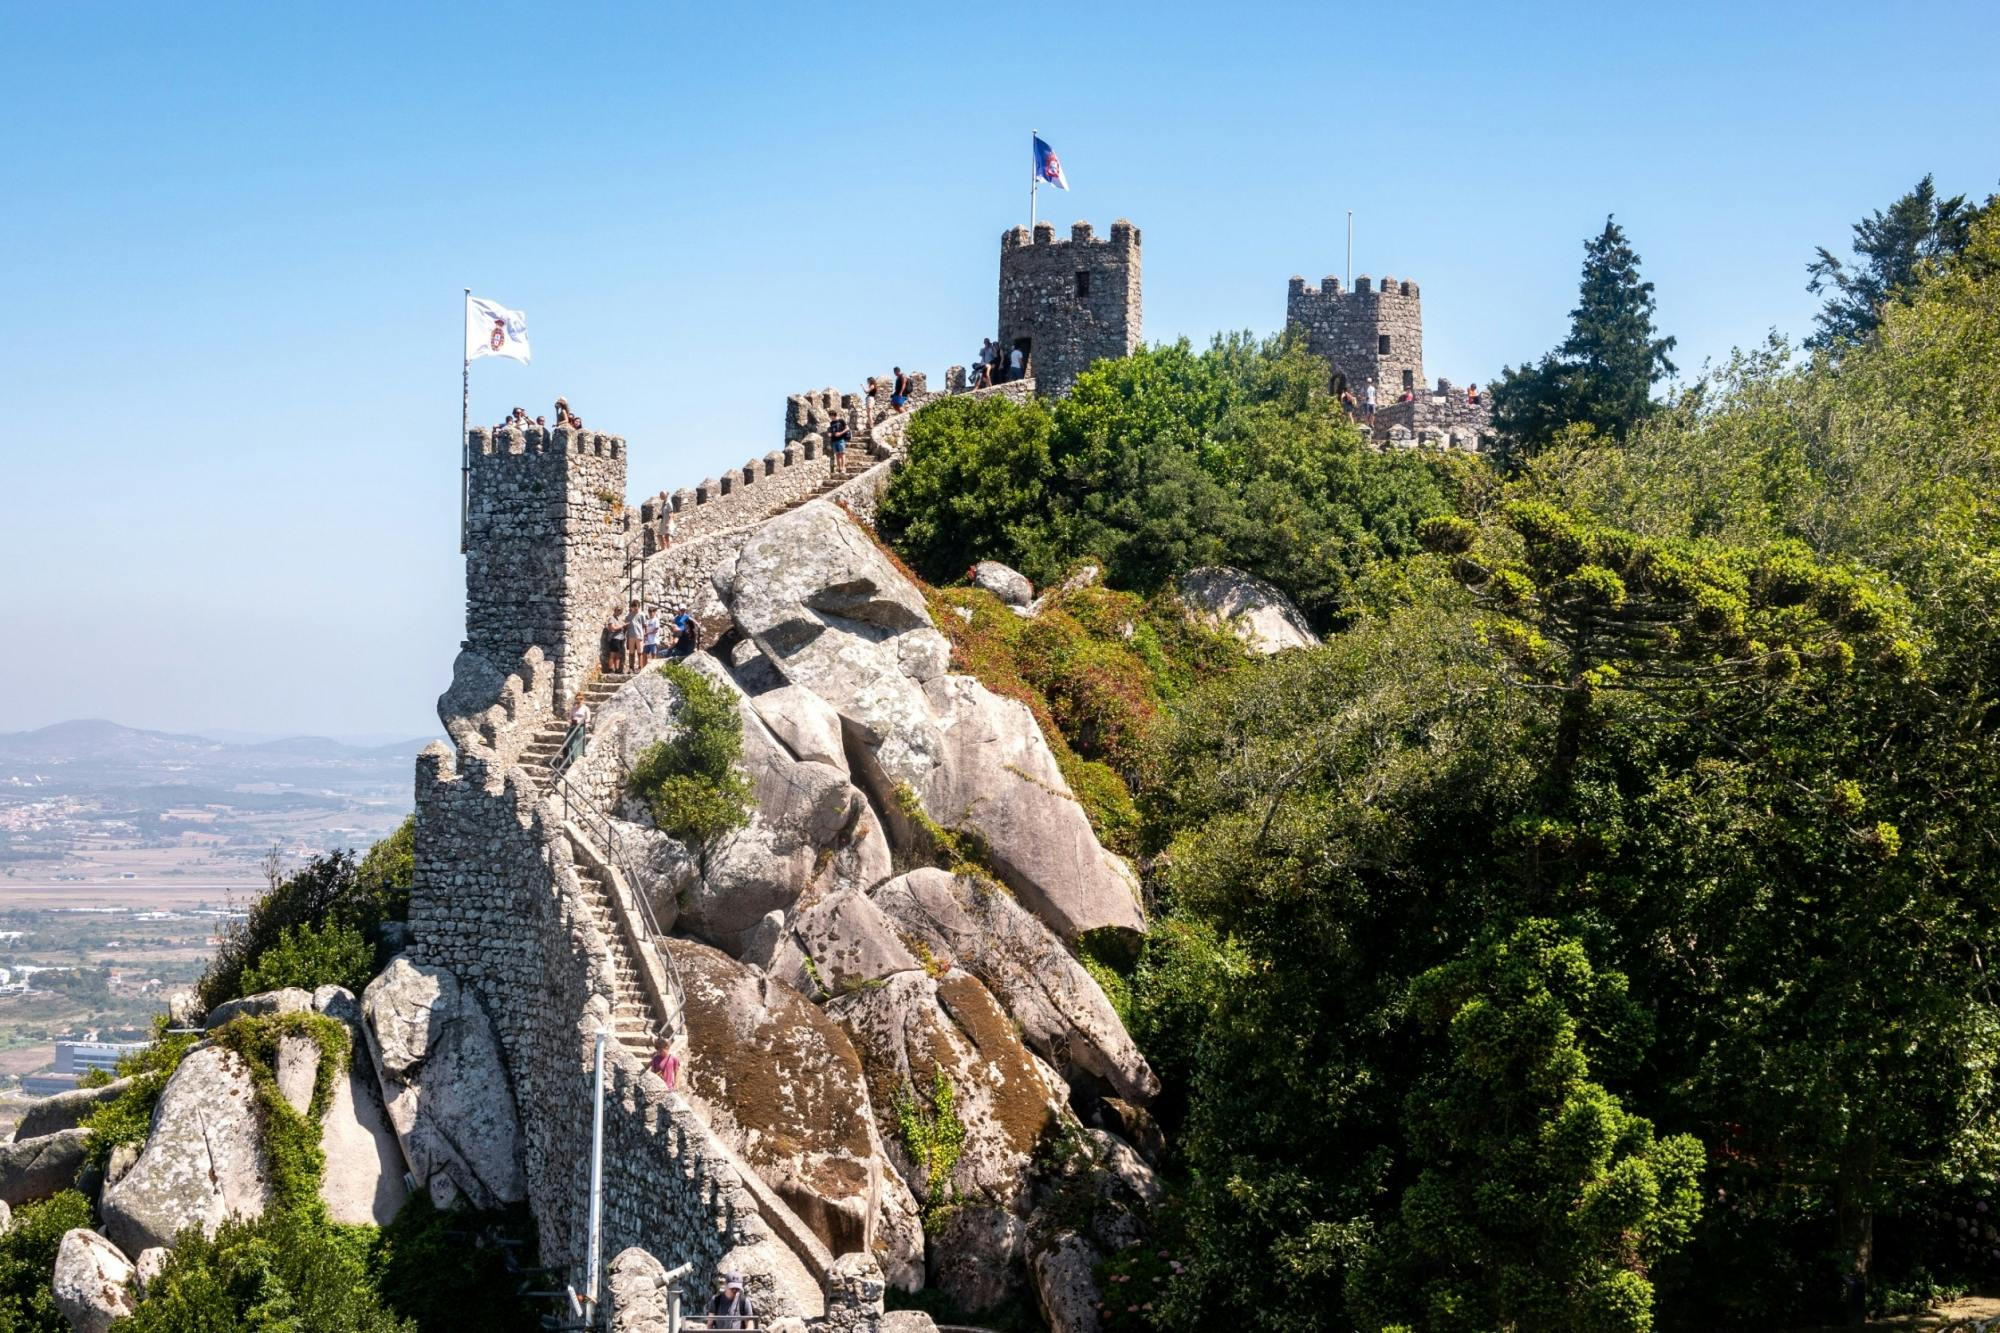 Billets électroniques pour le château des Maures et la Quinta da Regaleira avec visite audioguidée de Sintra